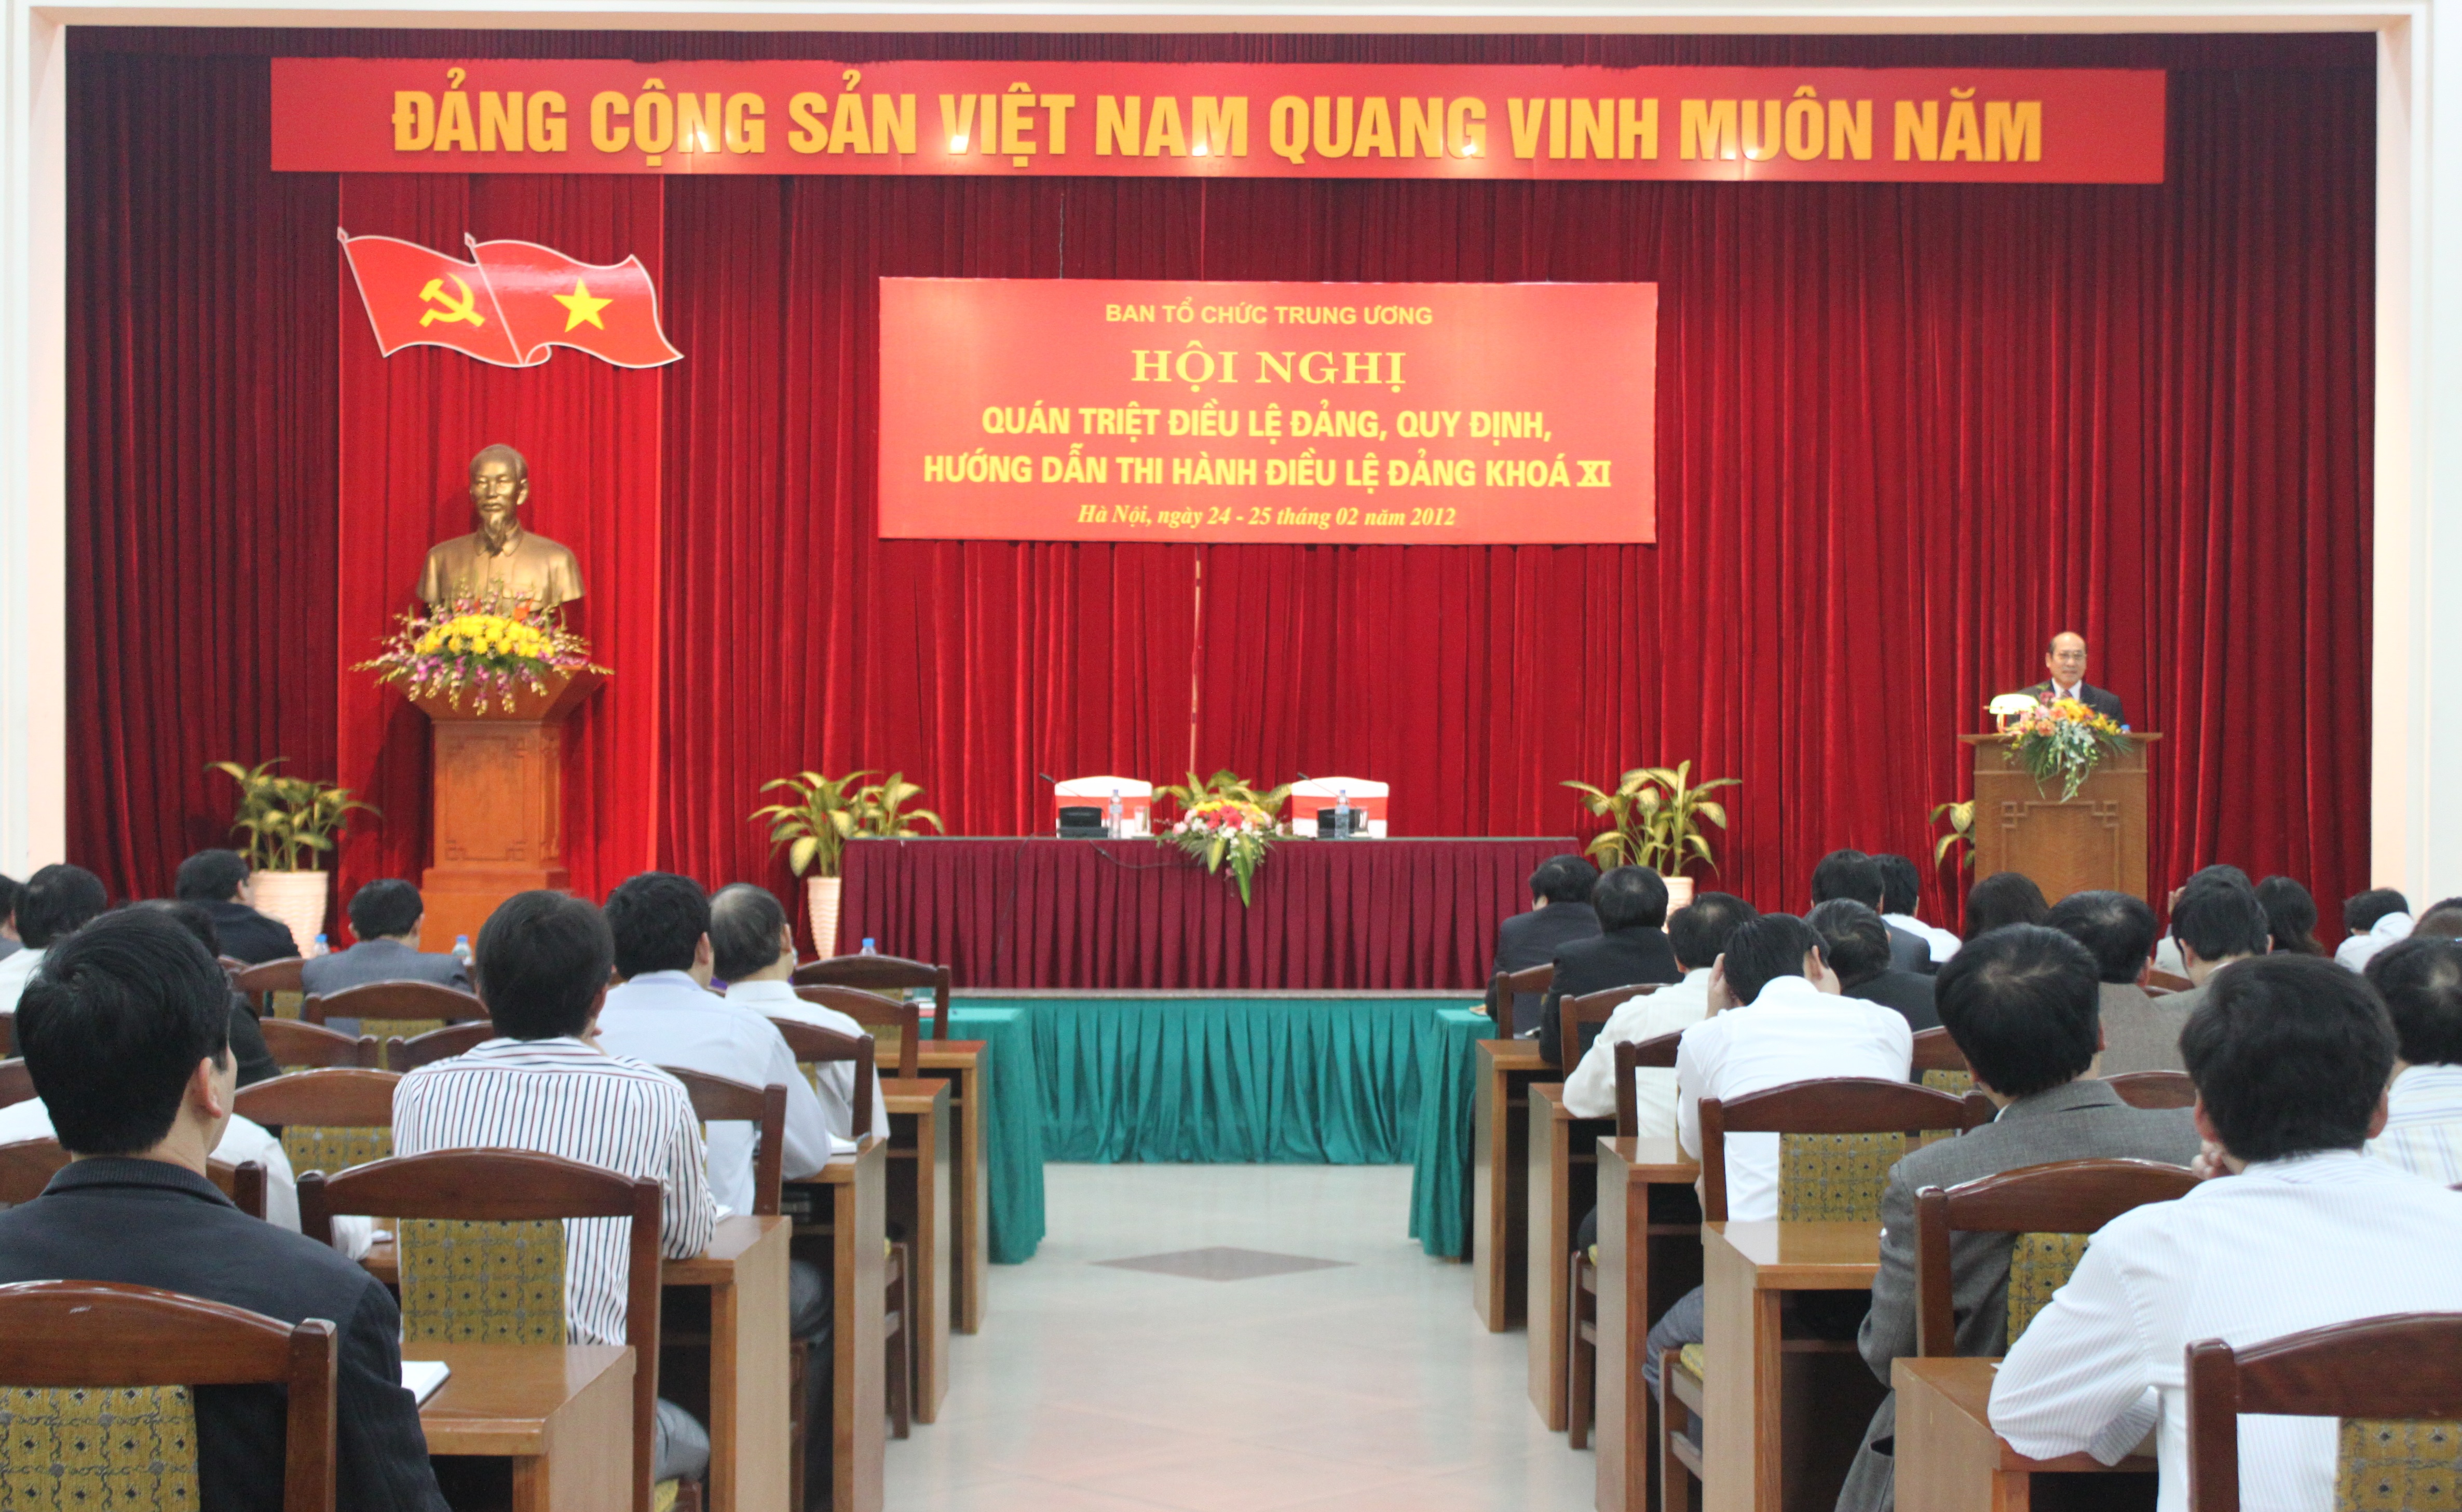 Ban Tổ chức Trung ương tổ chức Hội nghị quán triệt Điều lệ Đảng, Quy định, Hướng dẫn thi hành Điều lệ Đảng khóa XI, ngày 25-2-2012.